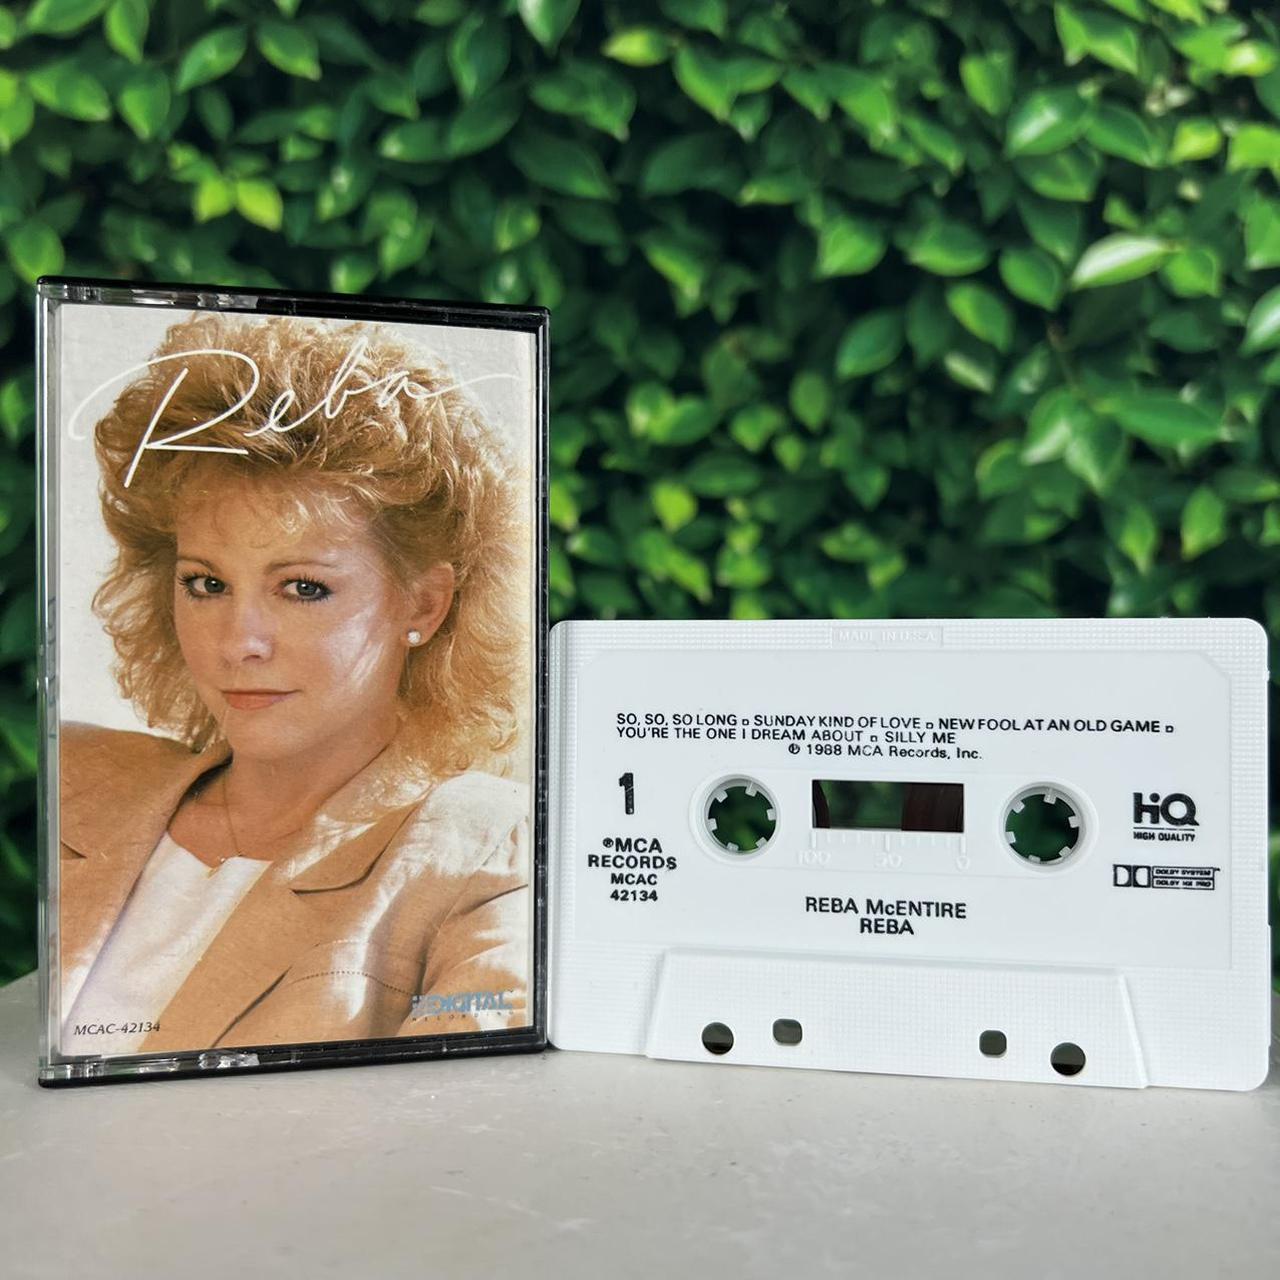 Product Image 1 - 1987 Reba McEntire album Reba